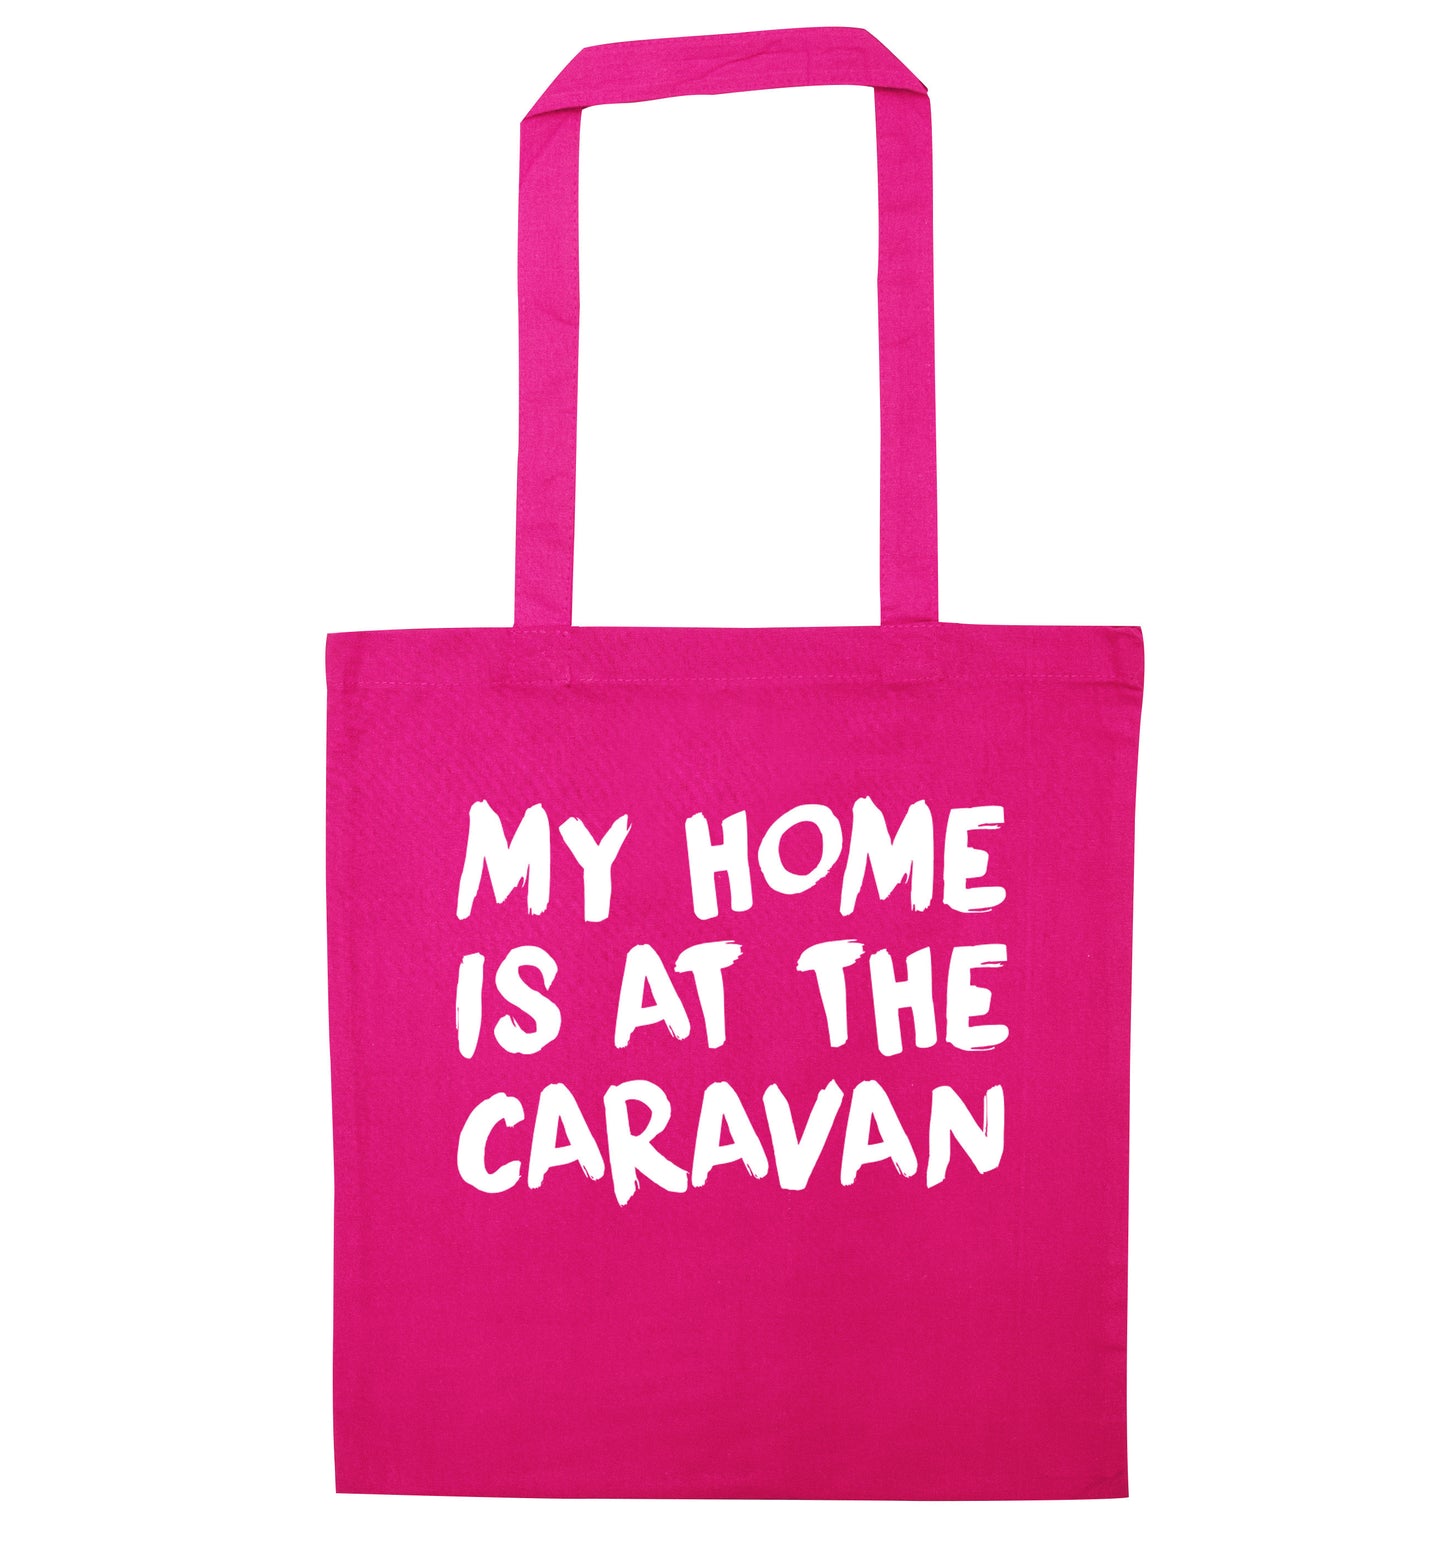 My home is at the caravan pink tote bag